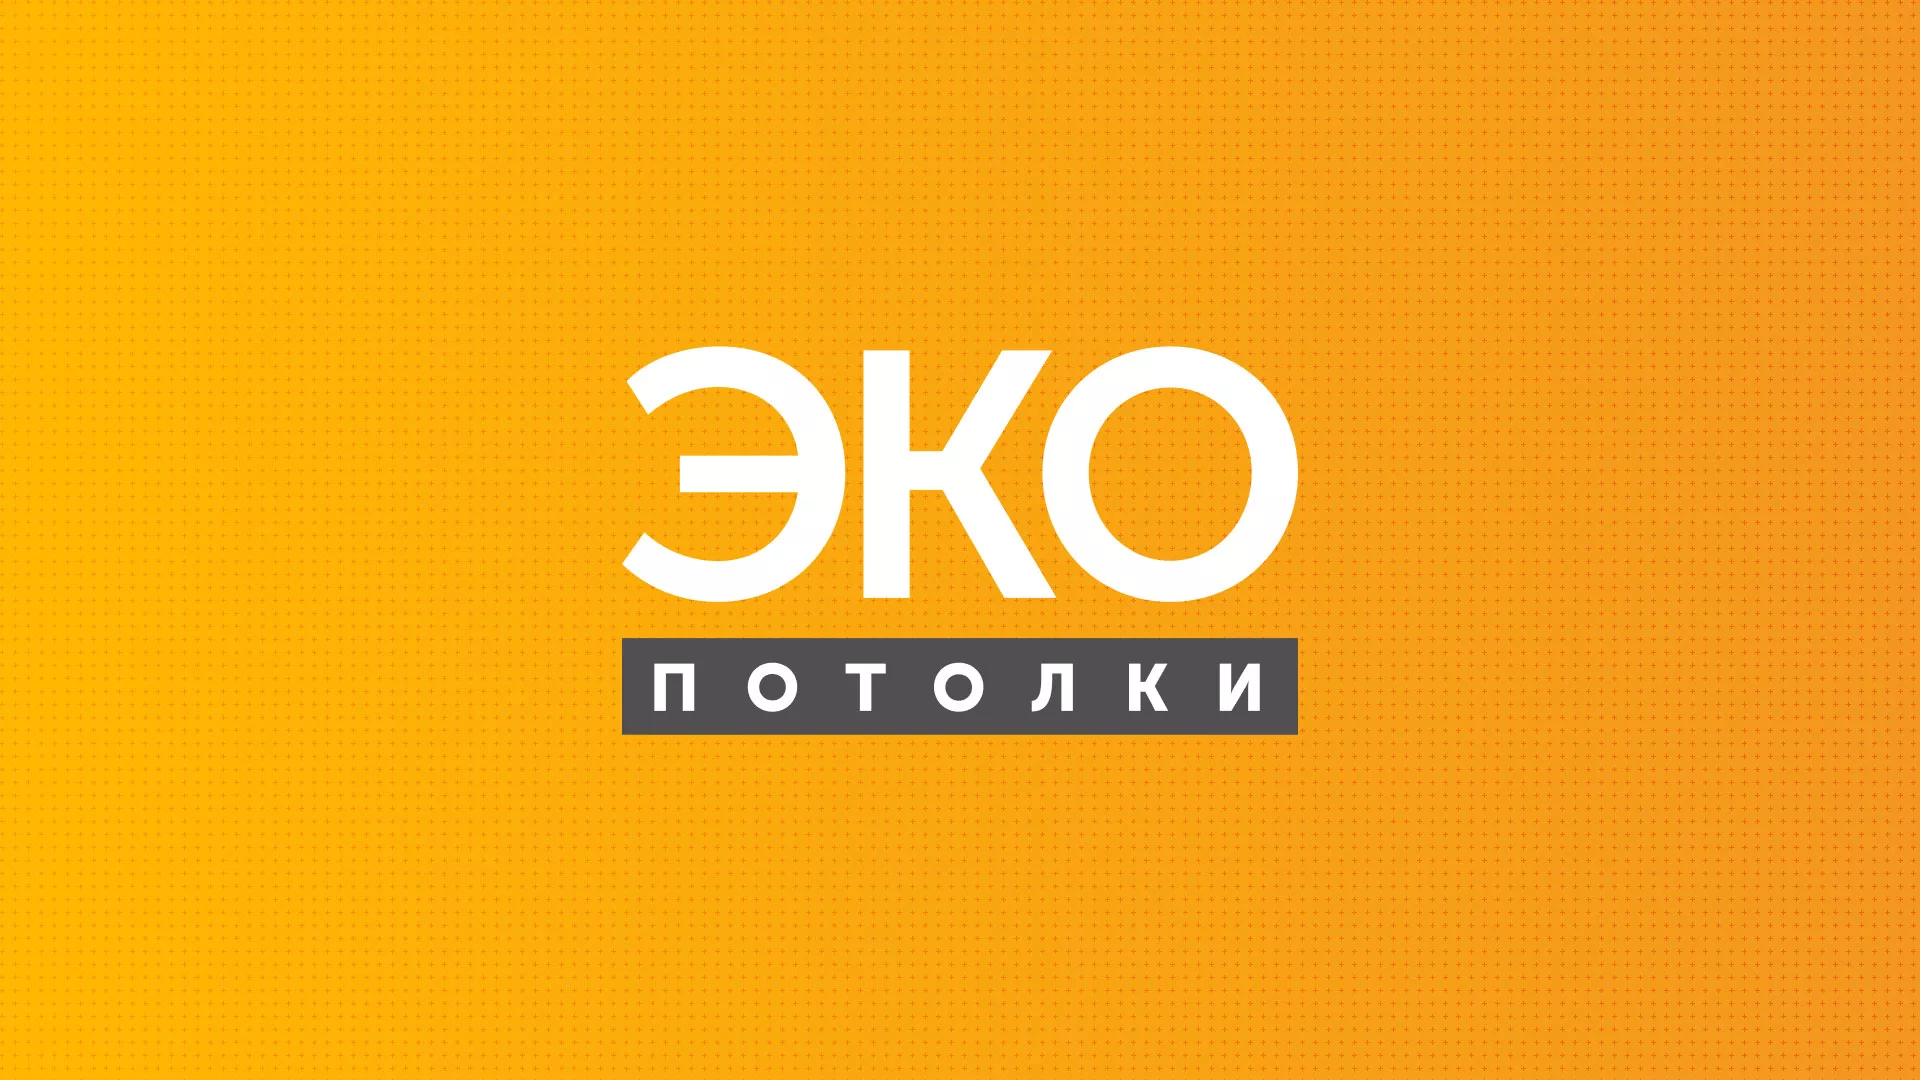 Разработка сайта по натяжным потолкам «Эко Потолки» в Задонске